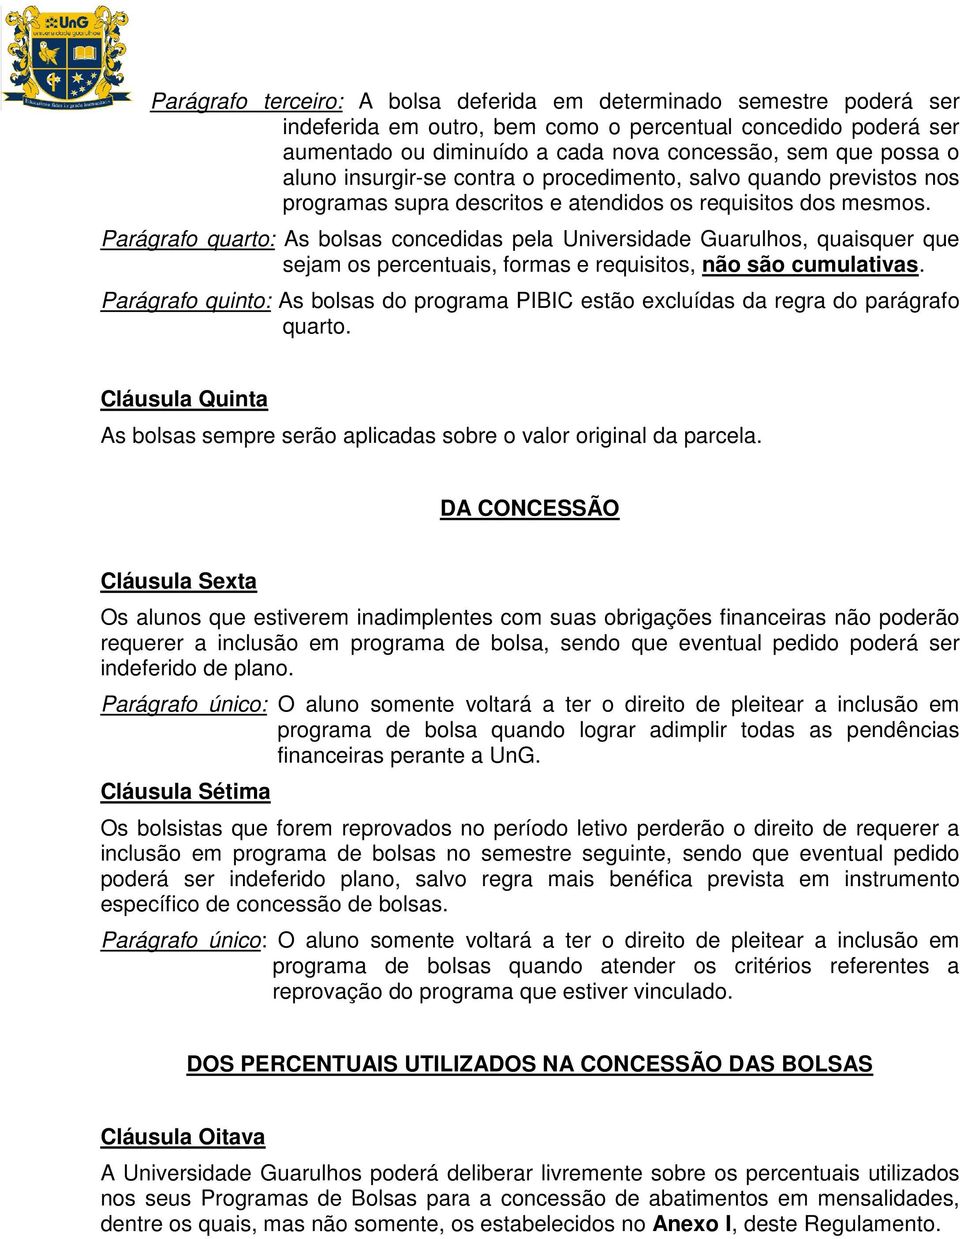 Parágrafo quarto: As bolsas concedidas pela Universidade Guarulhos, quaisquer que sejam os percentuais, formas e requisitos, não são cumulativas.